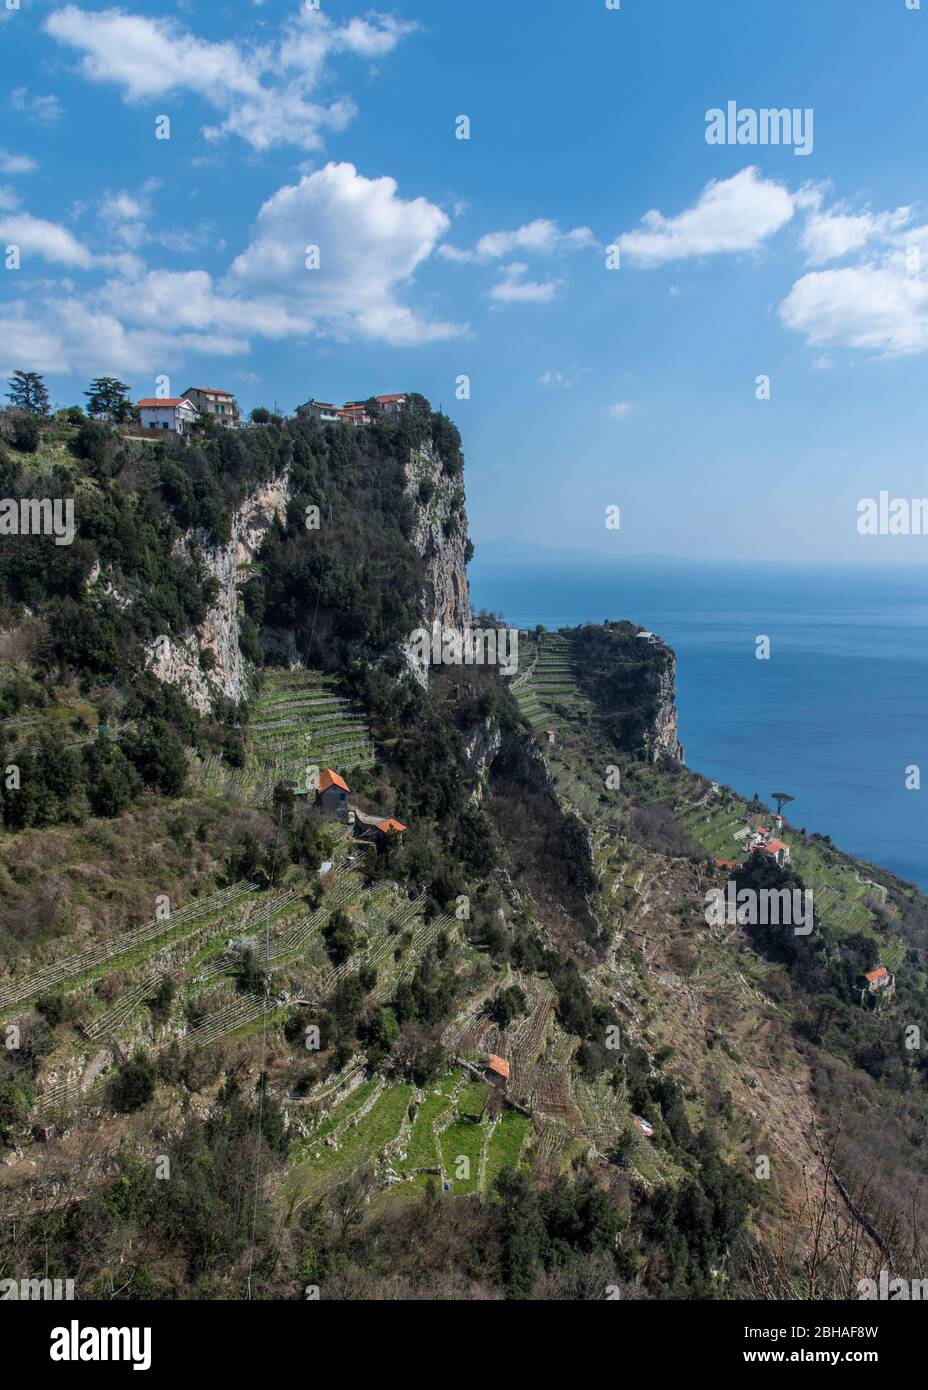 Der Weg der Götter: Sentiero degli Dei. Unglaublich schöner Wanderweg hoch über der Amalfitana oder Amalfi Küste in Italien, von Agerola nach Positano. März 2019. Klippe mit Landwirtschaft Stockfoto